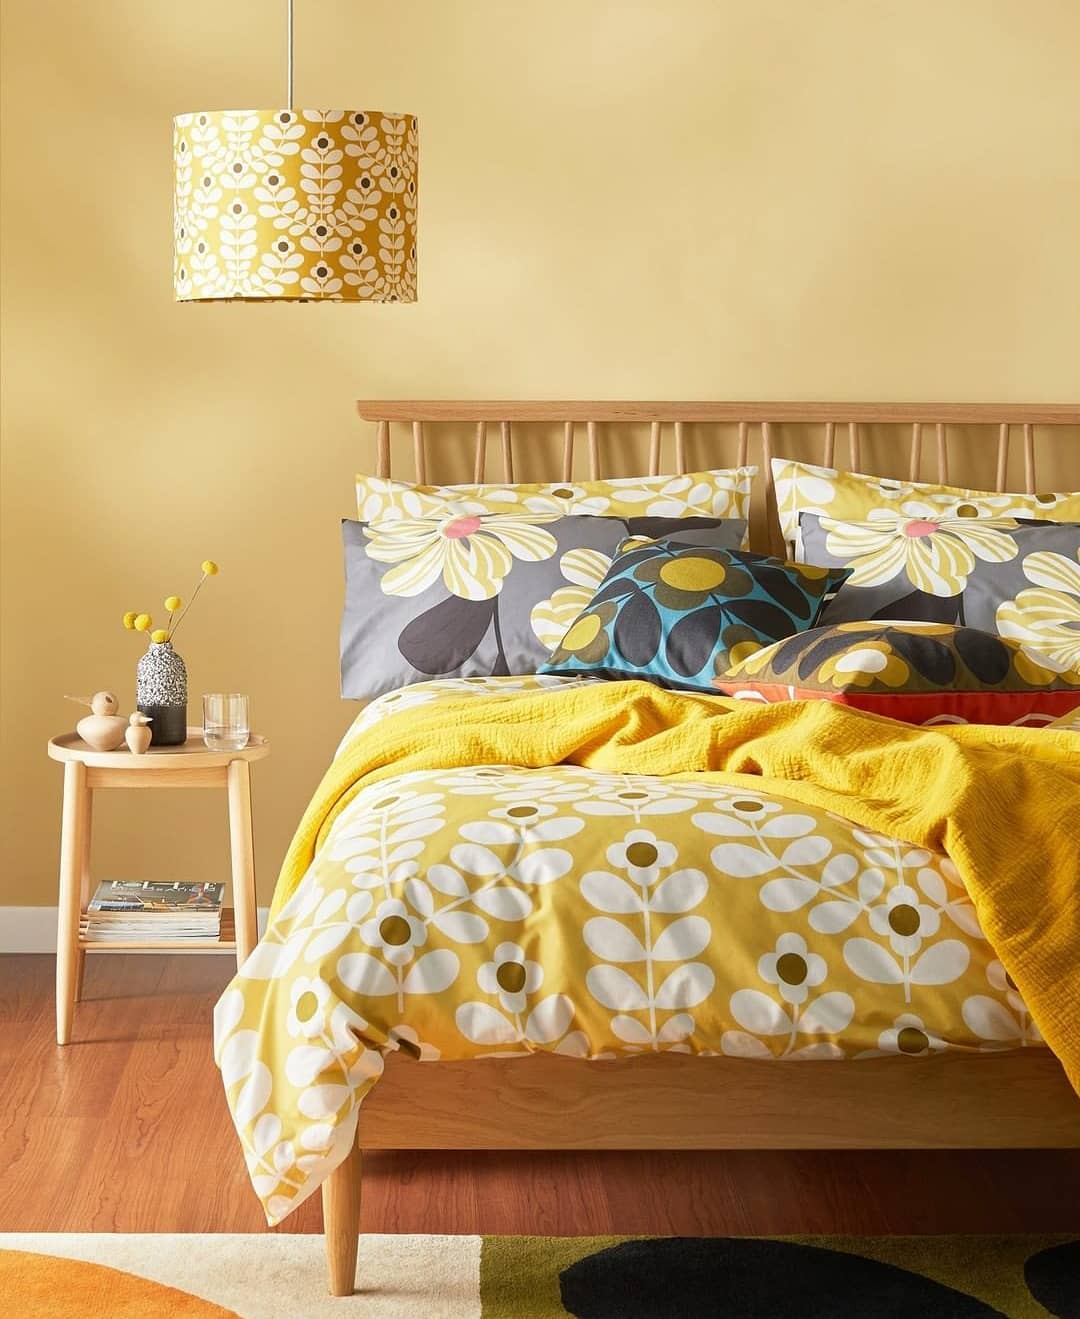 Quarto de casal com parede amarelo bem clara. As roupas de cama também possuem tonalidade amarela.